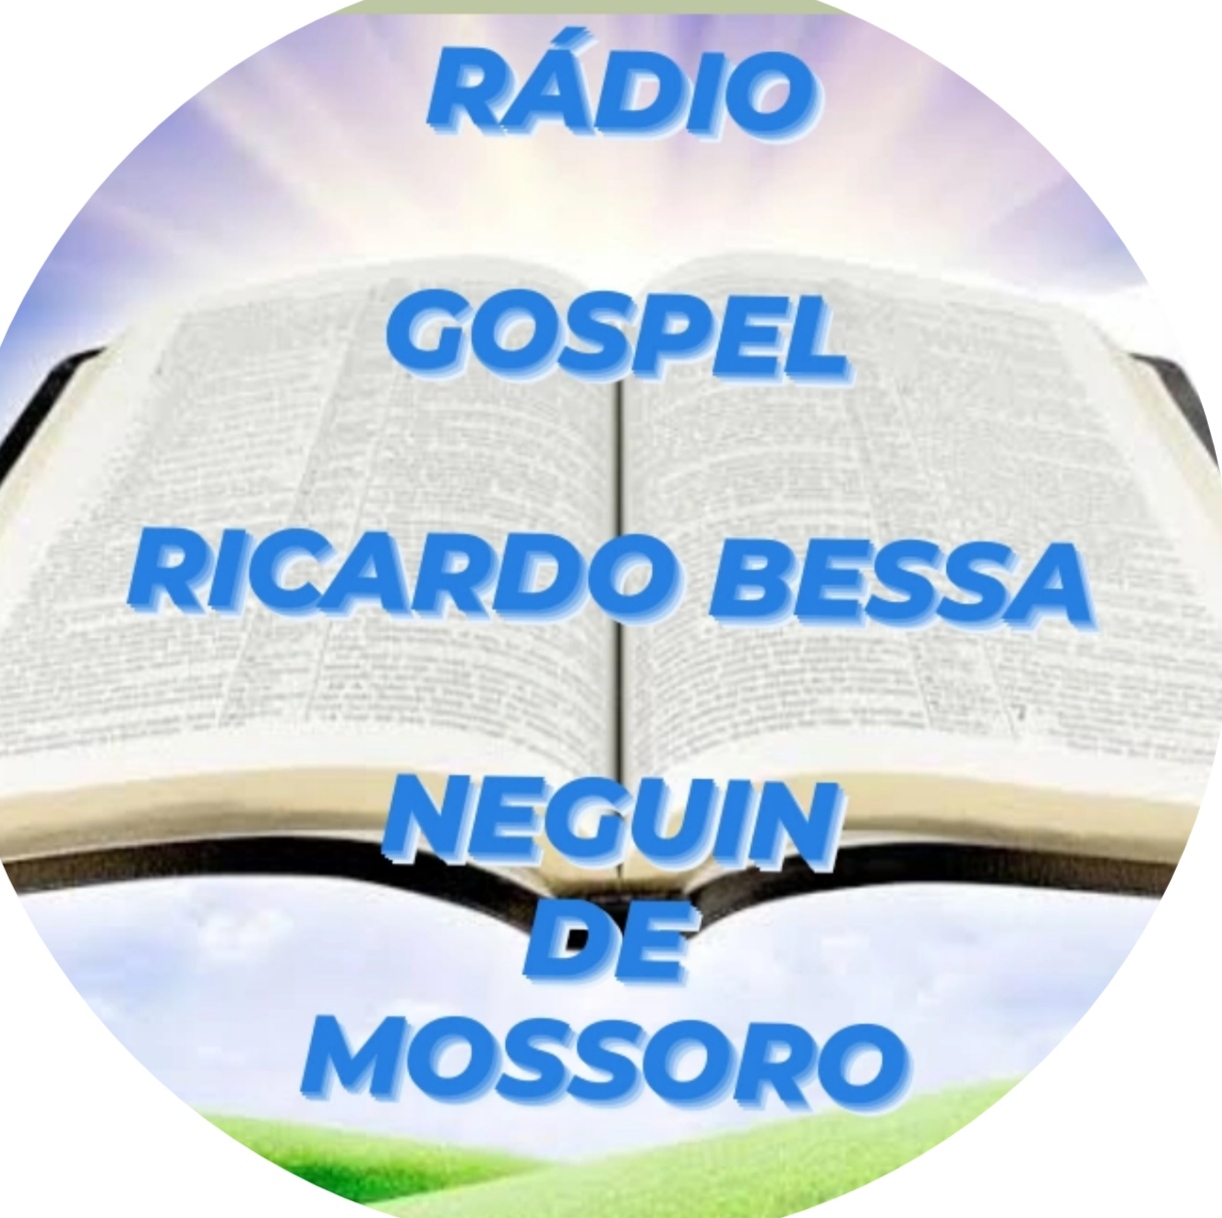 🎤Rádio Gospel Ricardo Bessa neguin de mossoro